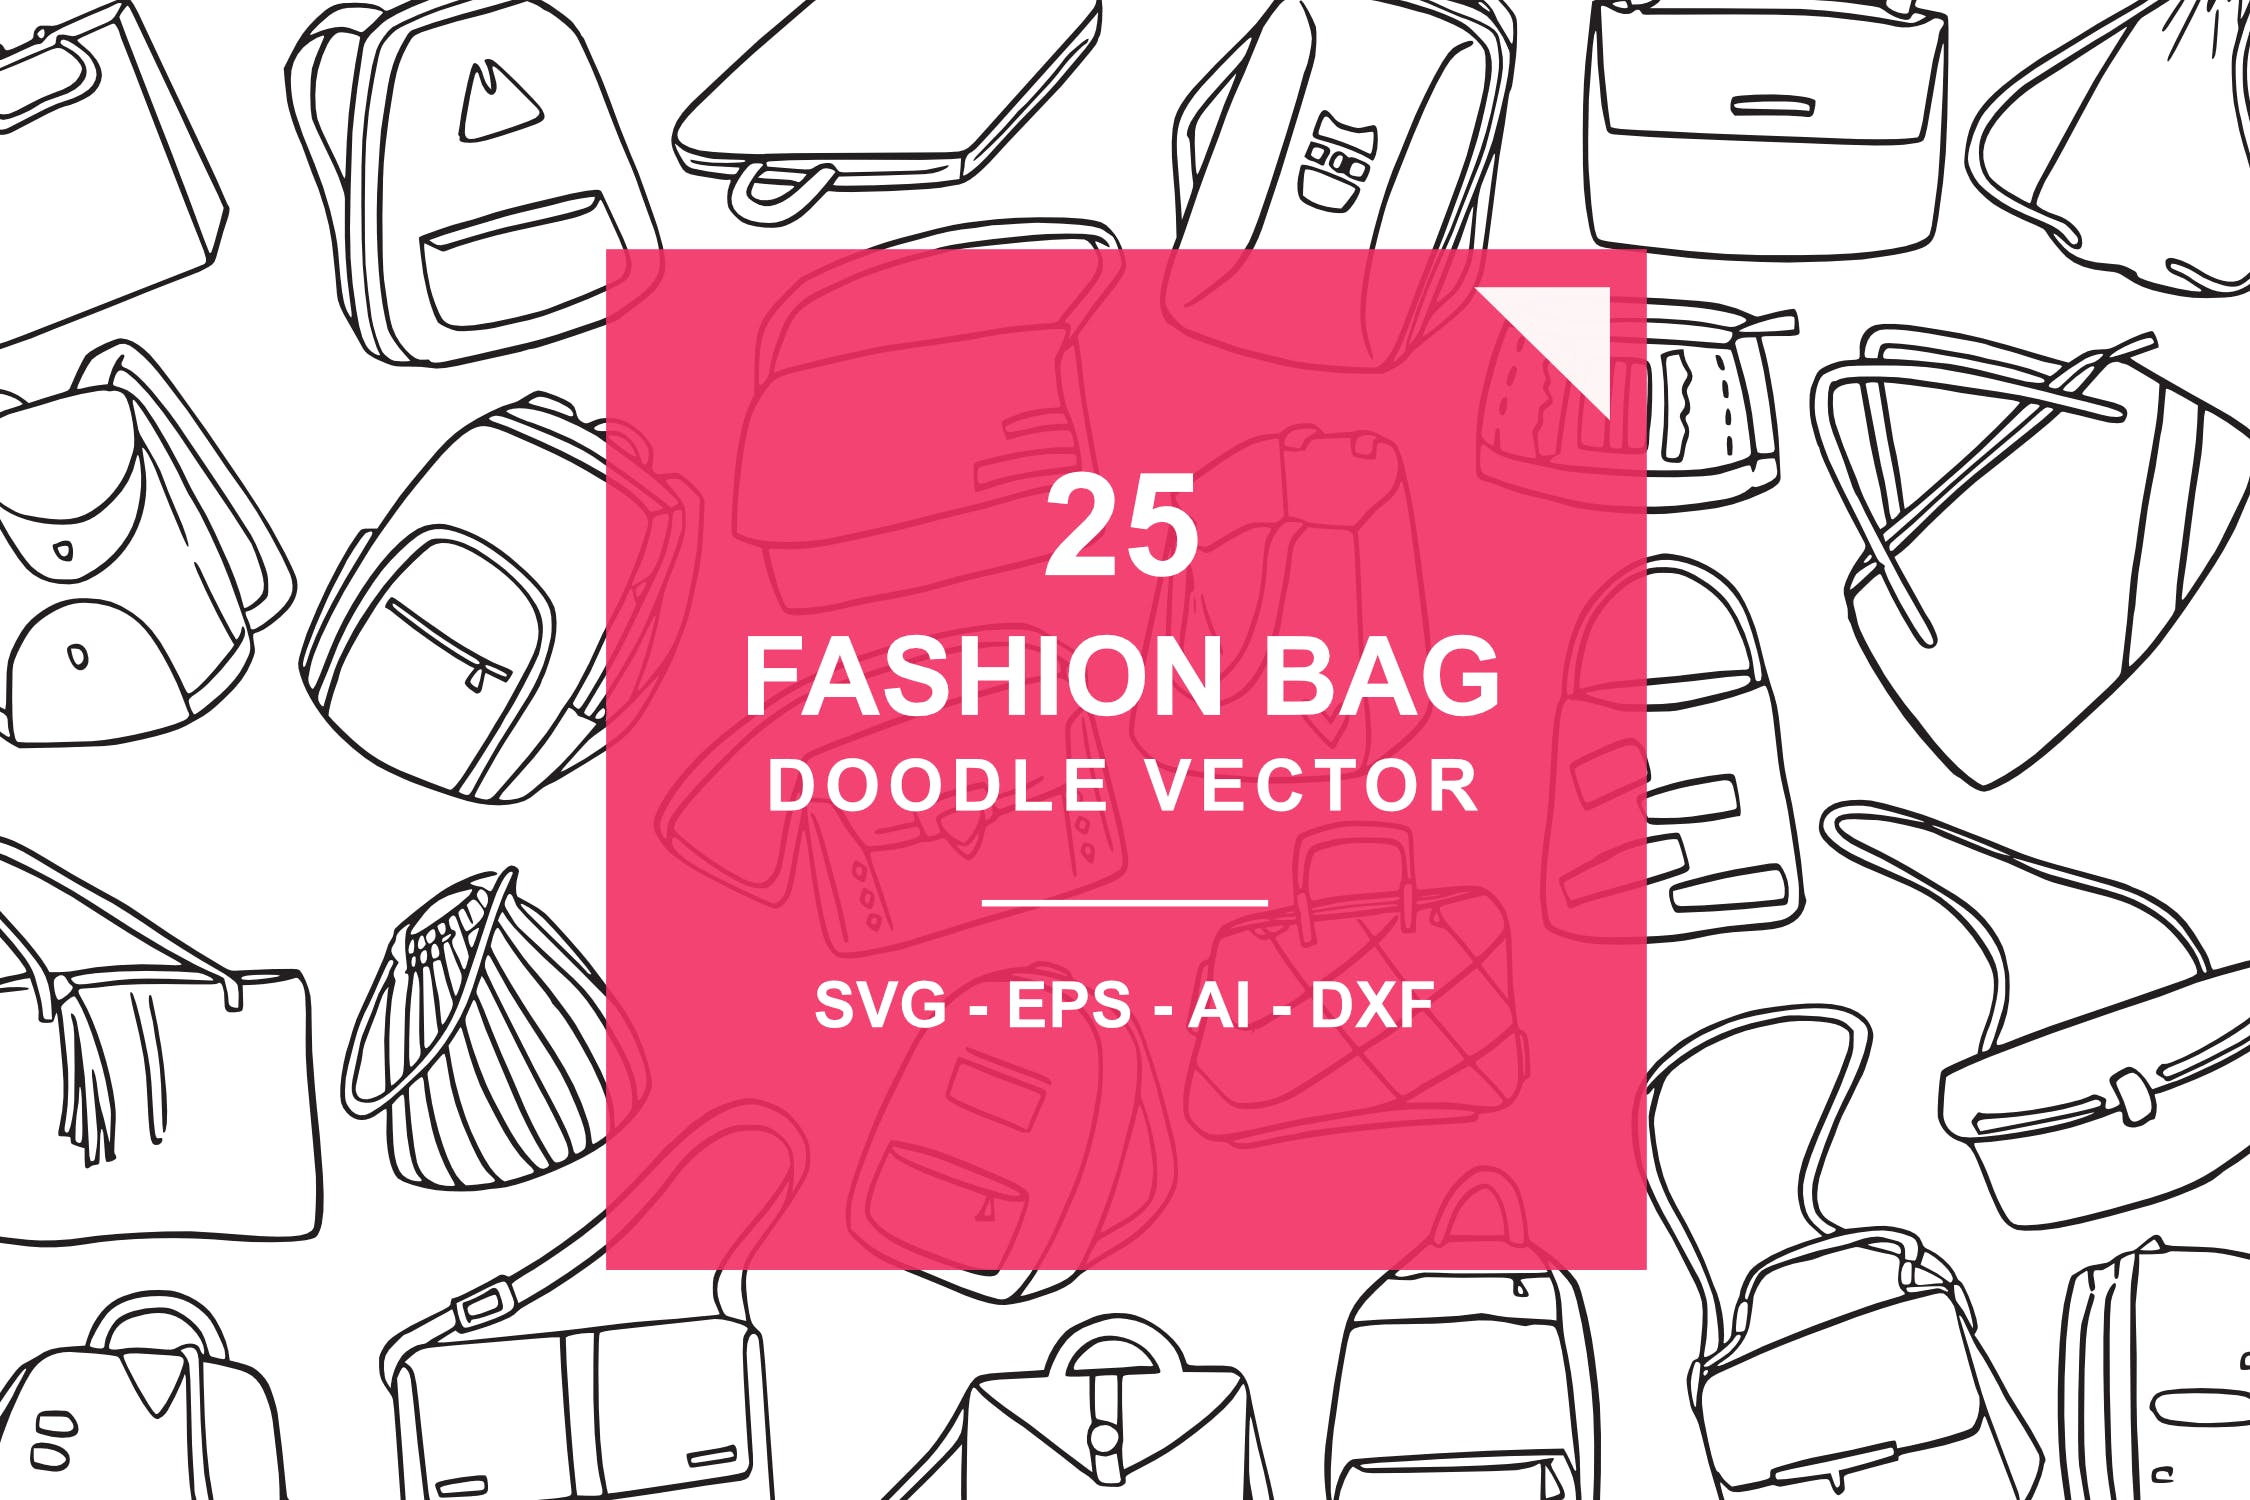 25款时尚背包/挎包涂鸦矢量图形图案素材 Fashion Bag Doodle Vector插图